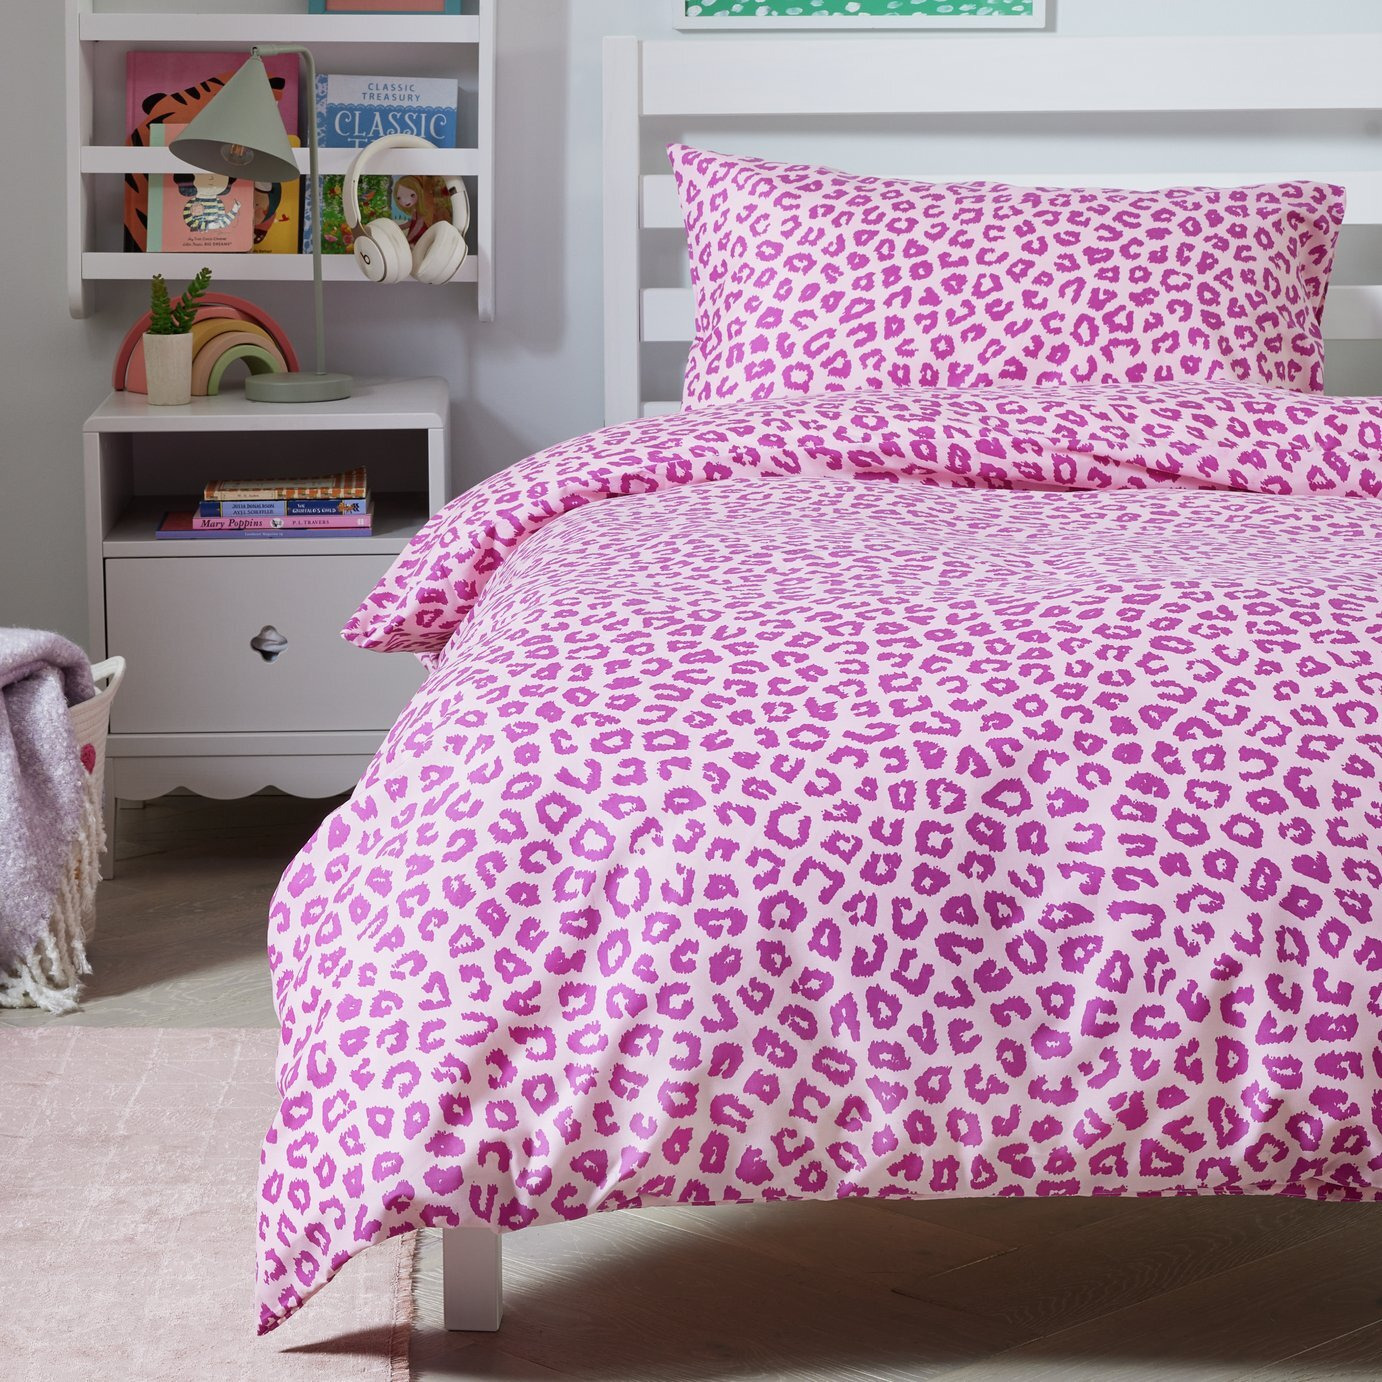 Argos Home Animal Print Pink Kids Bedding Set - Single - image 1